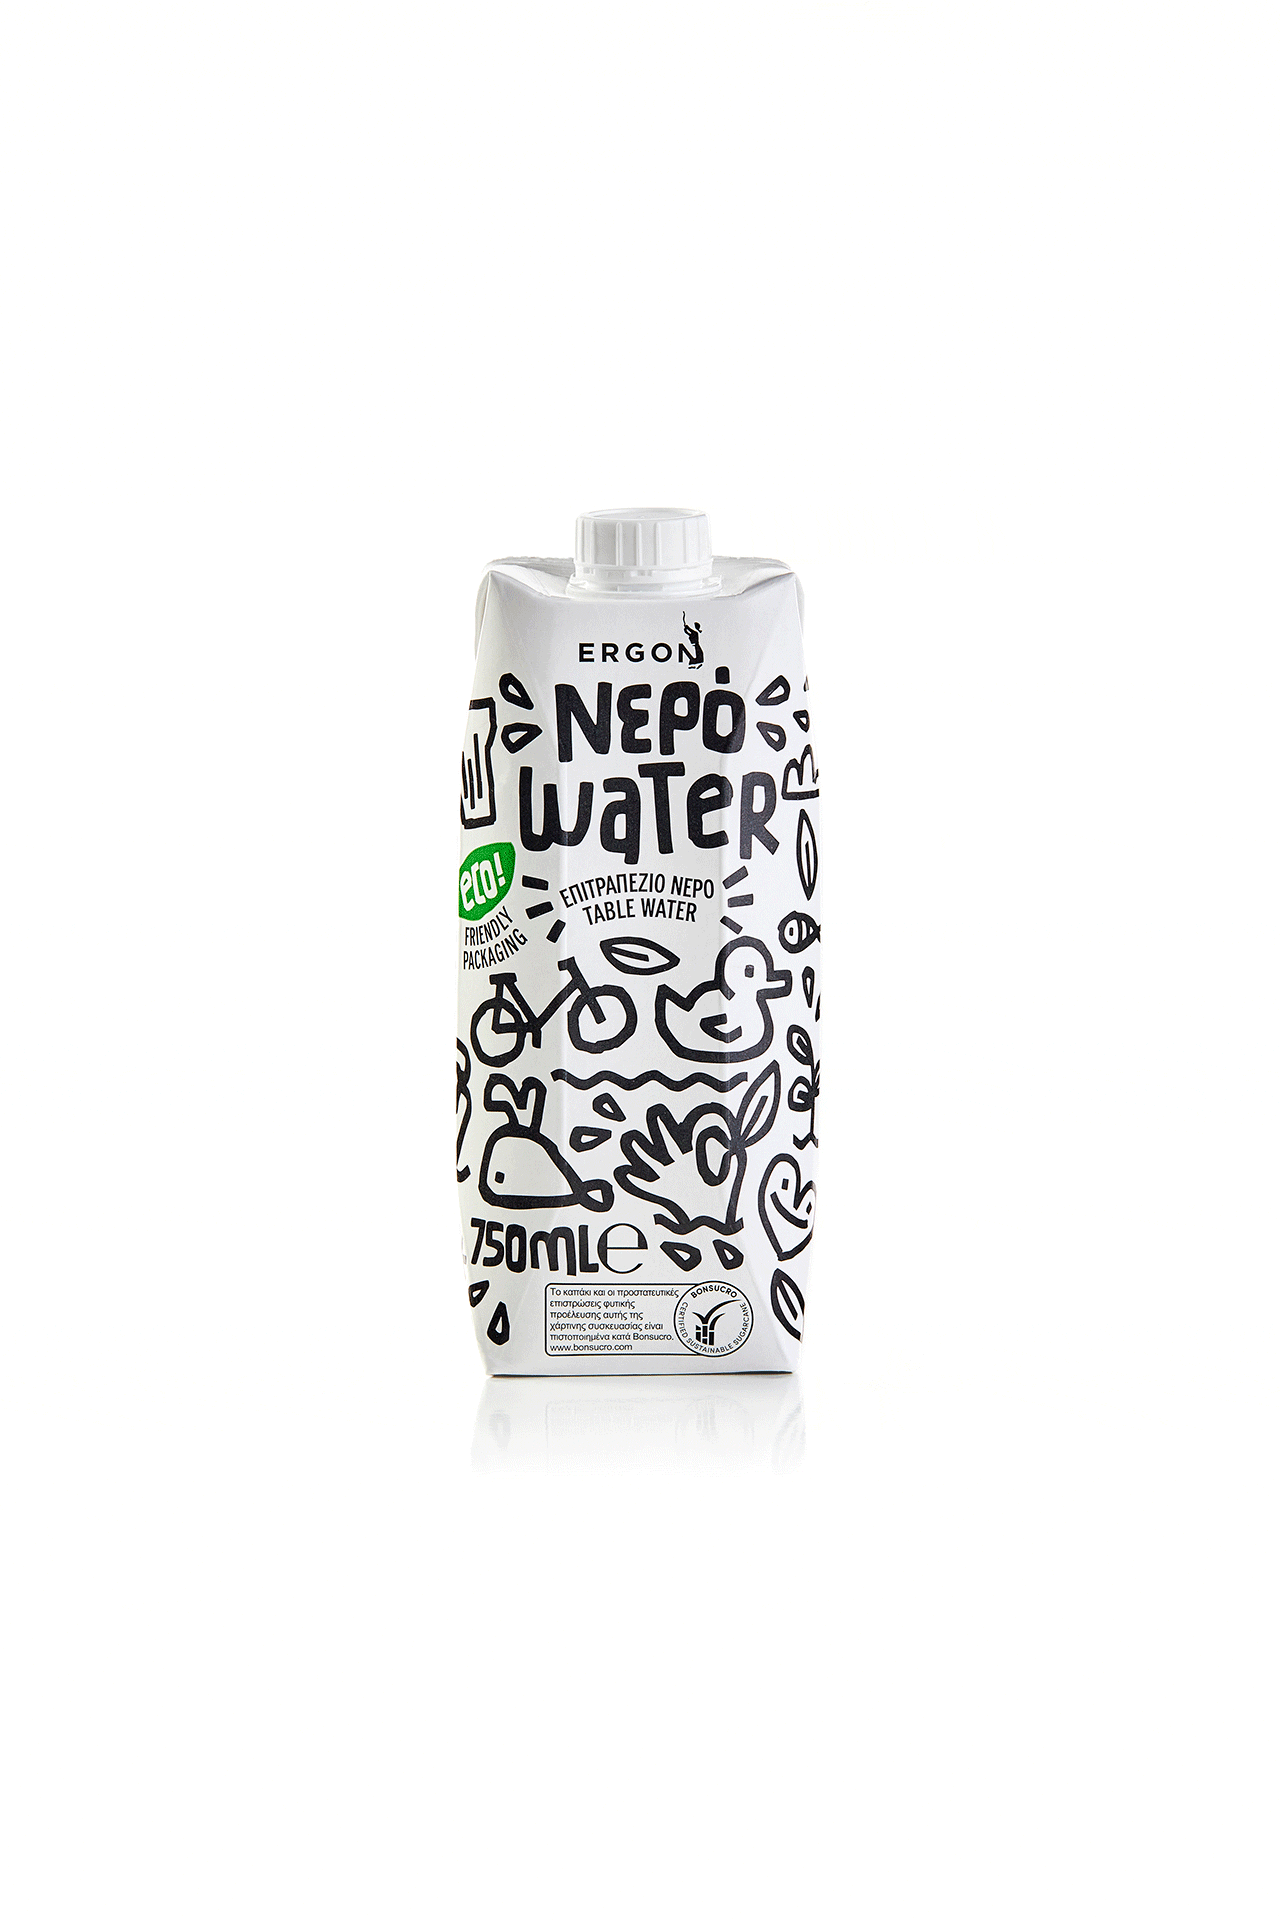 国外瓶装水包装设计作品,简洁大气的瓶装水宣传设计。